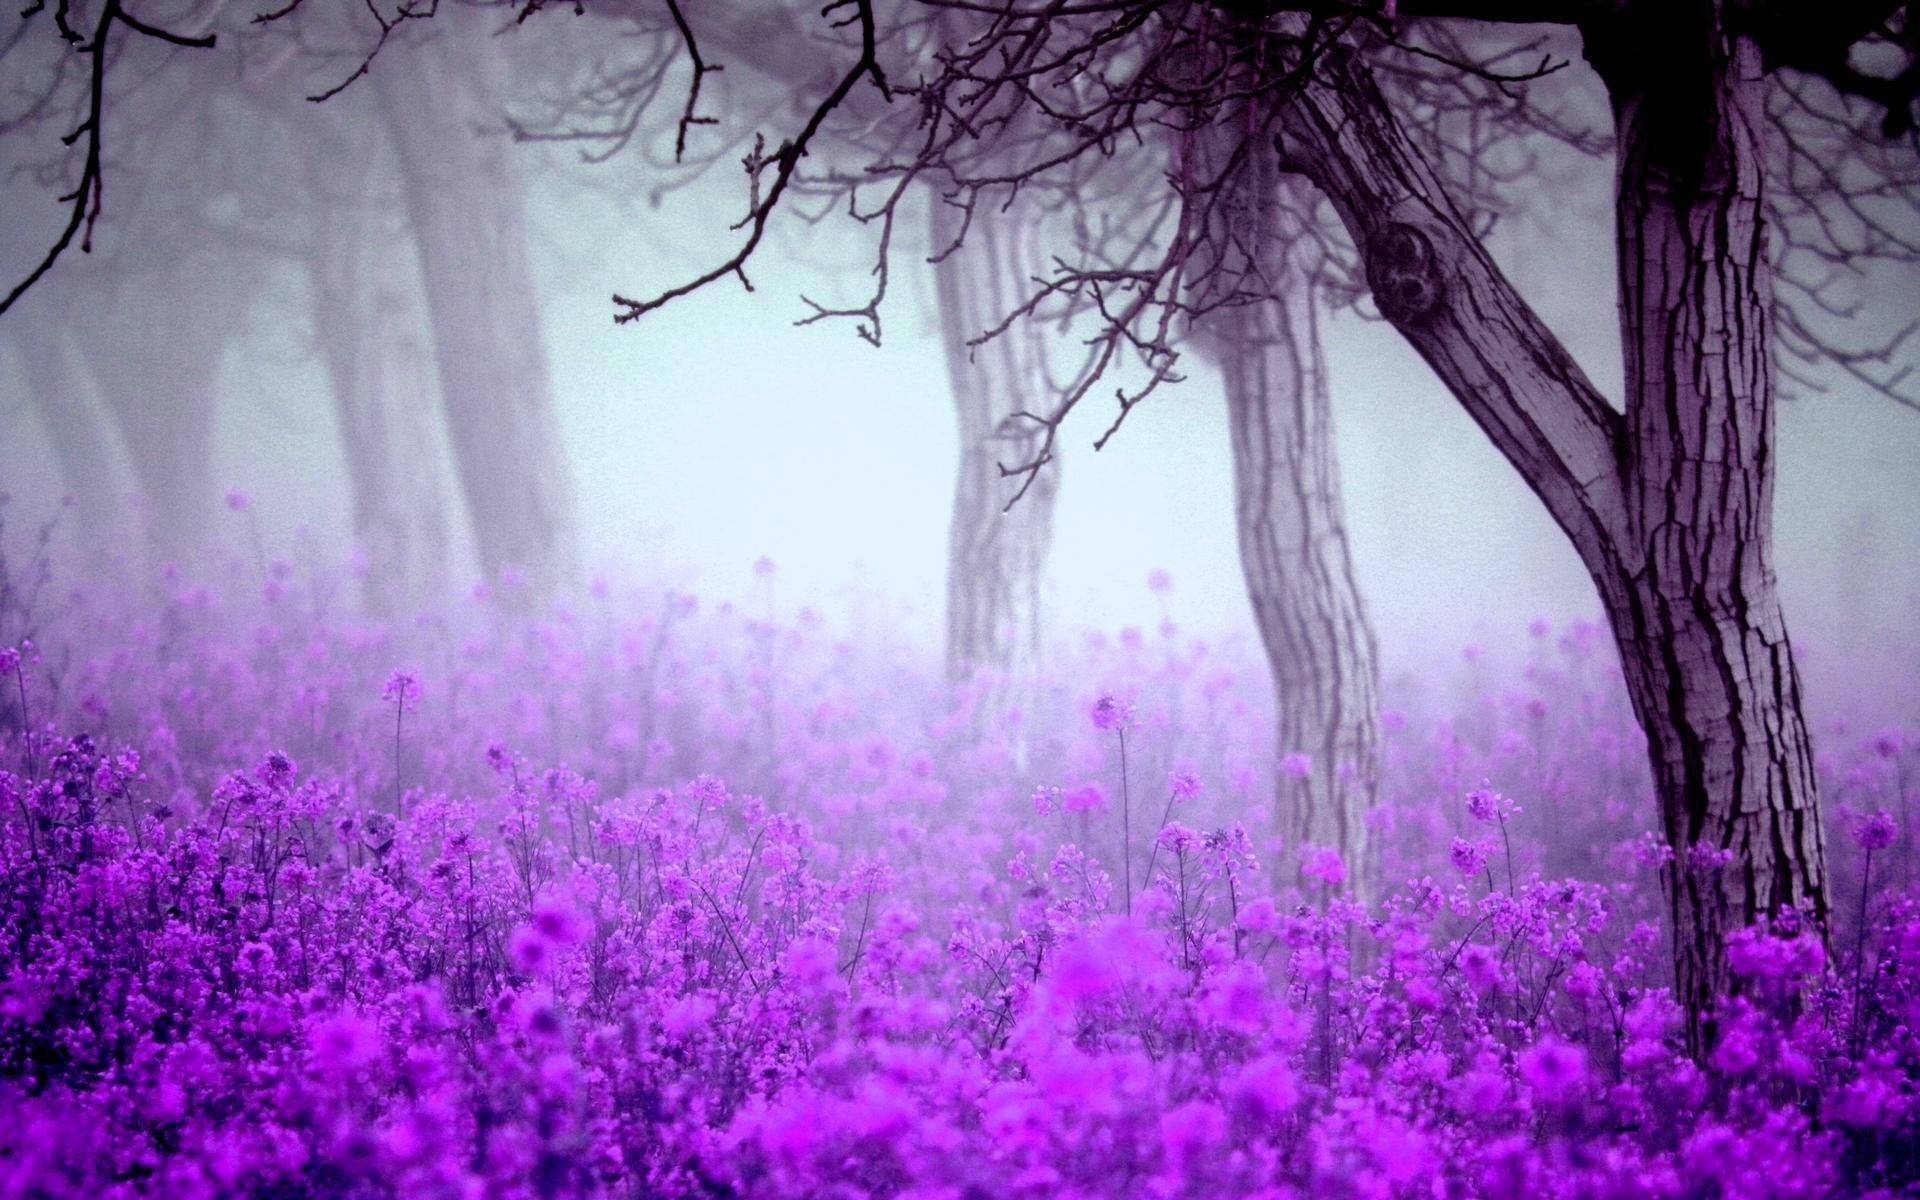 purple flower wallpaper hd desktop